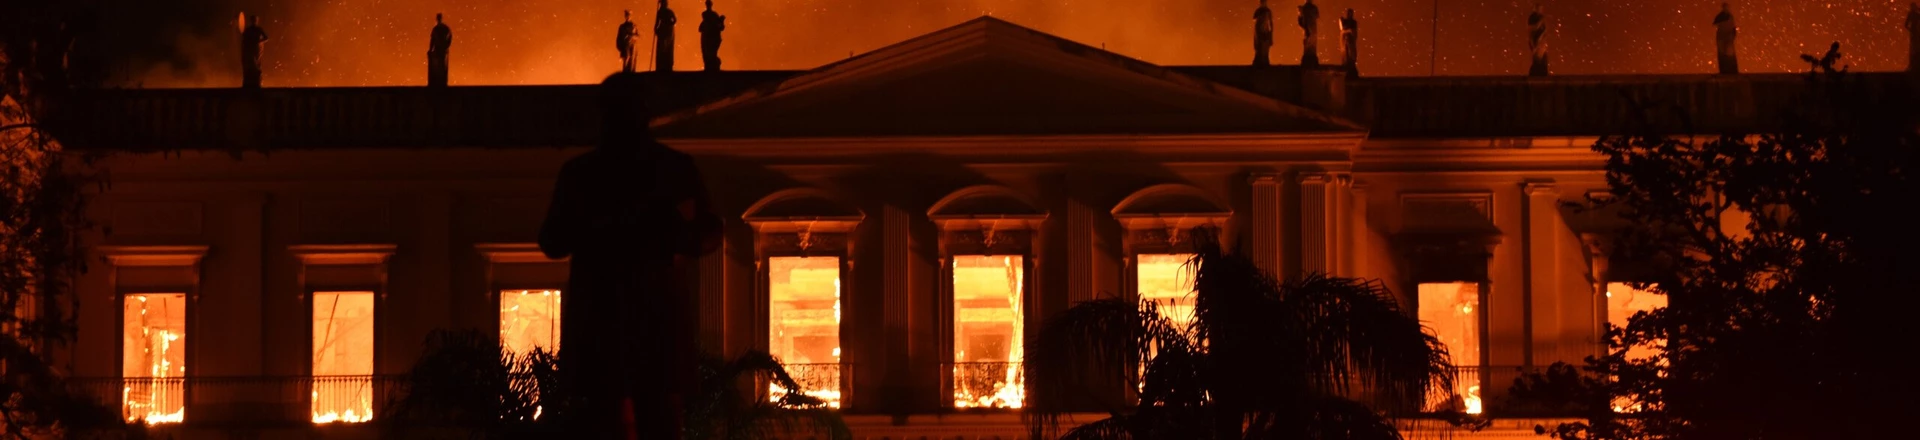 Incêndio destrói Museu Nacional do Rio domingo, 2 de setembro.